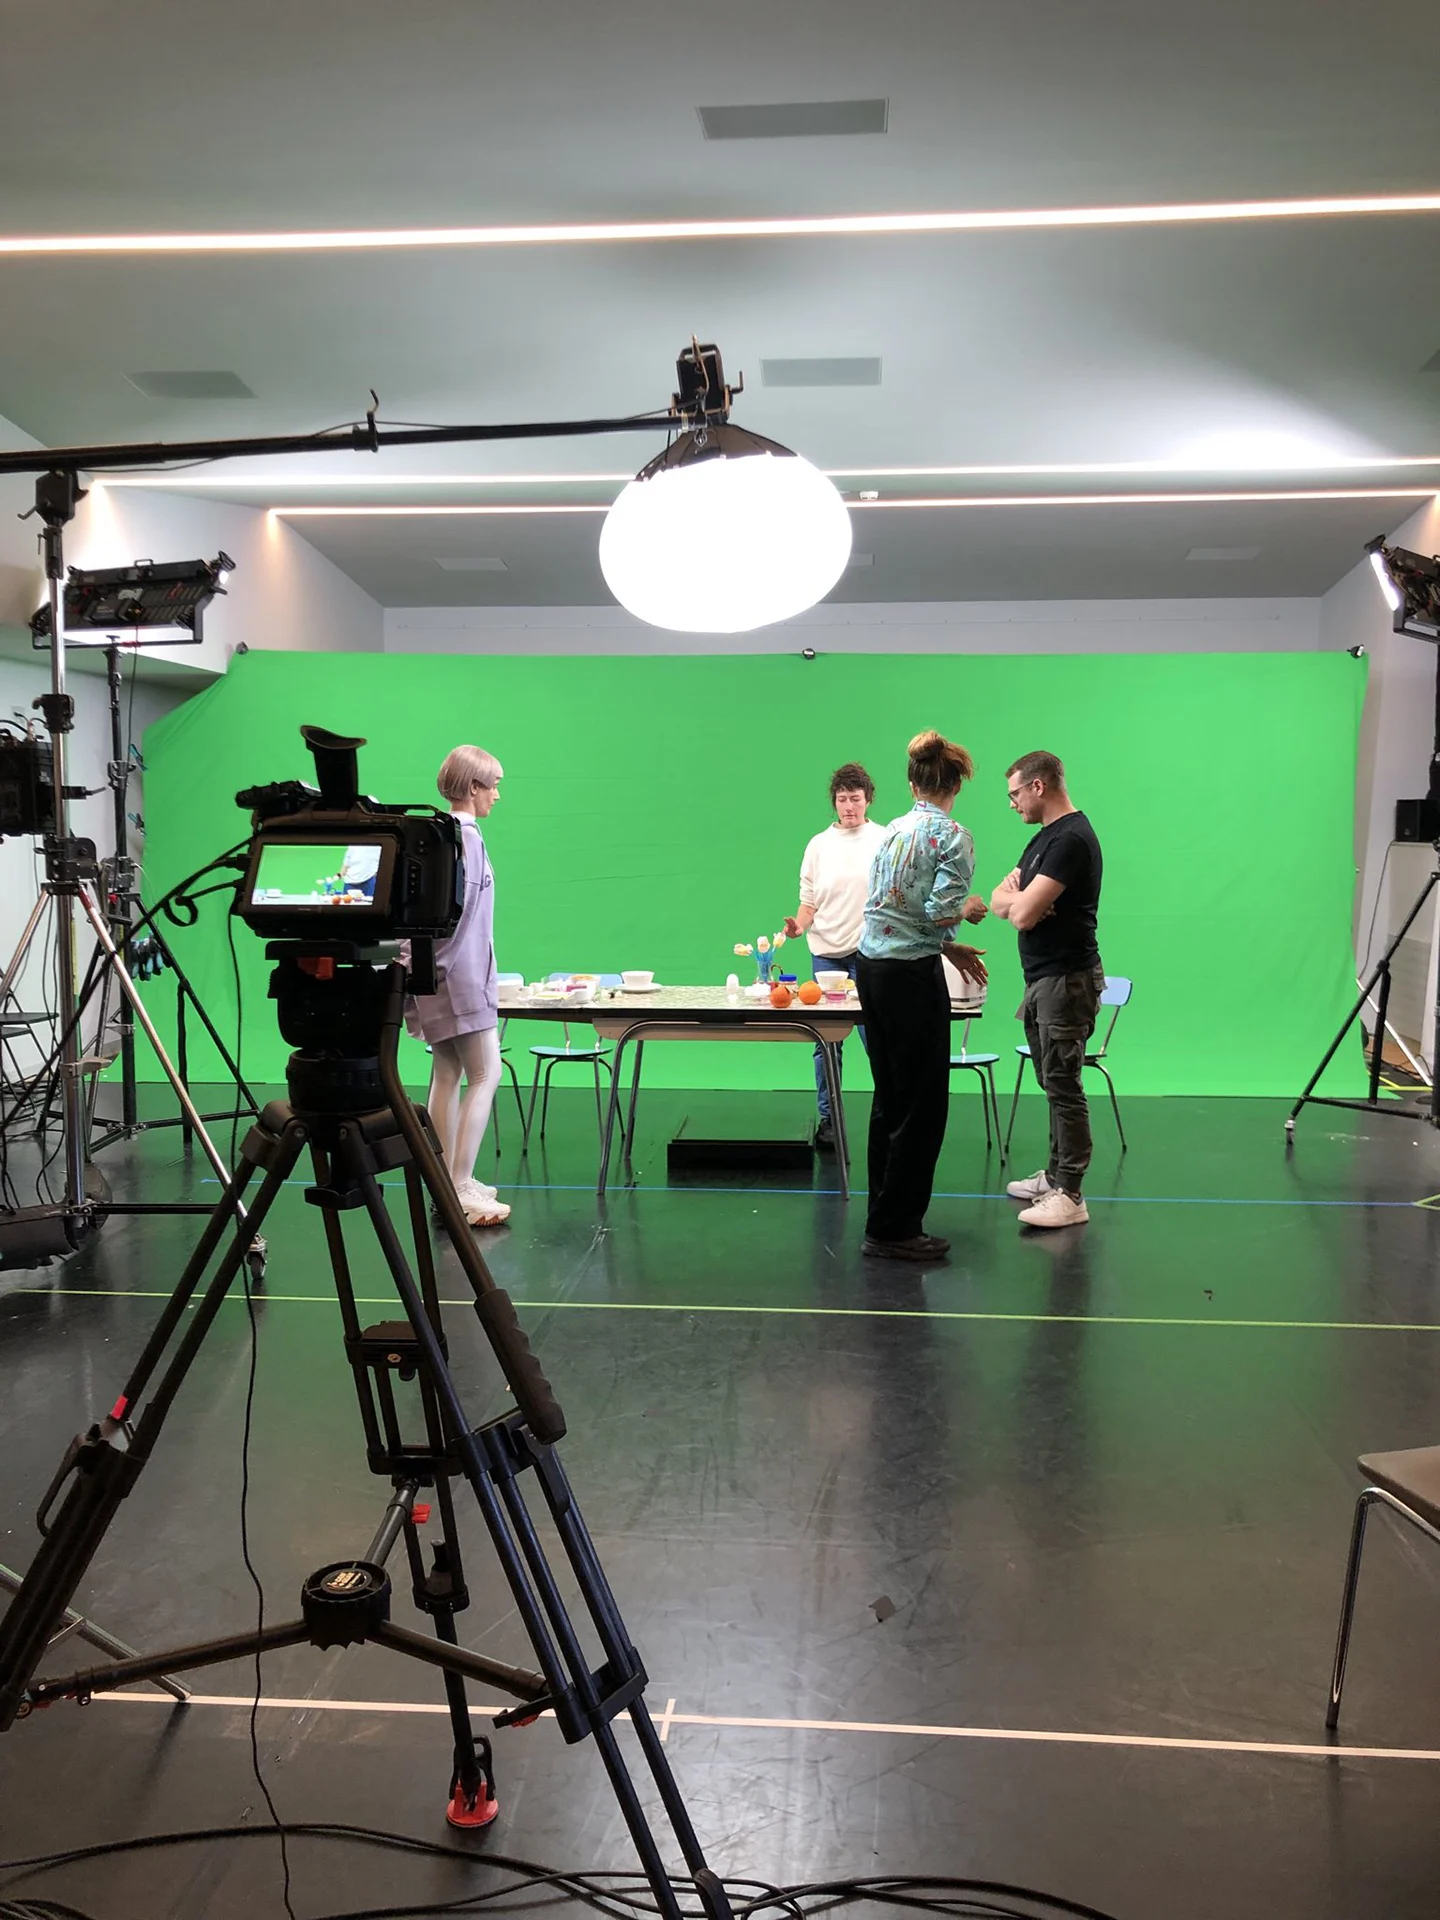 Cornland Studio - backstage d'un tournage sur fond vert